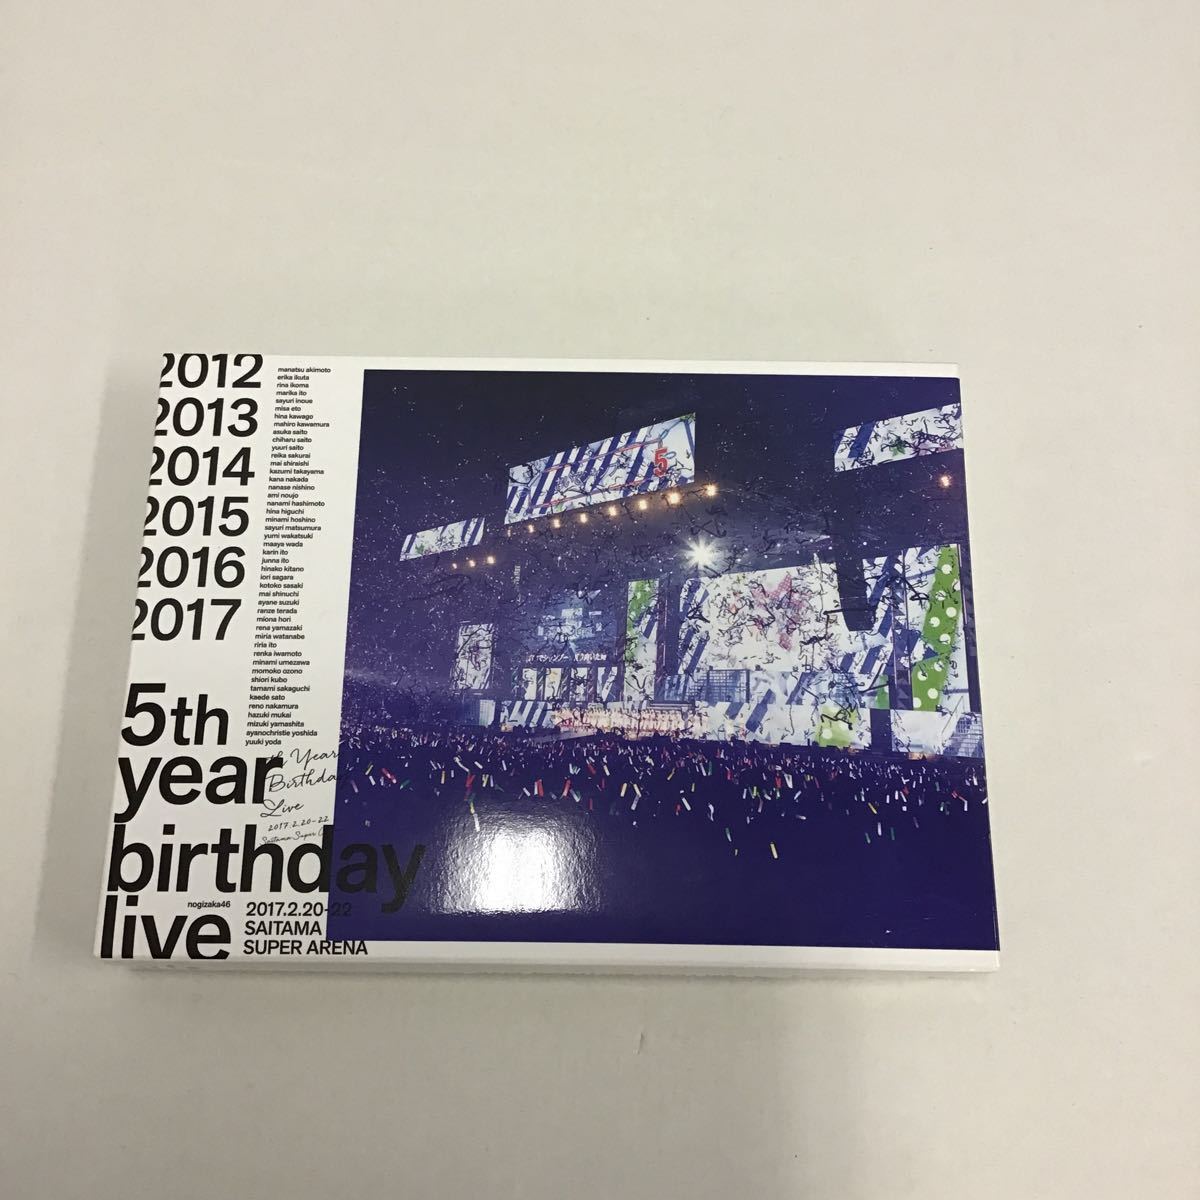 18 乃木坂46 5th YEAR BIRTHDAY LIVE 2017.20.22 埼玉スーパーアリーナ Blu‐ray (60)_画像1